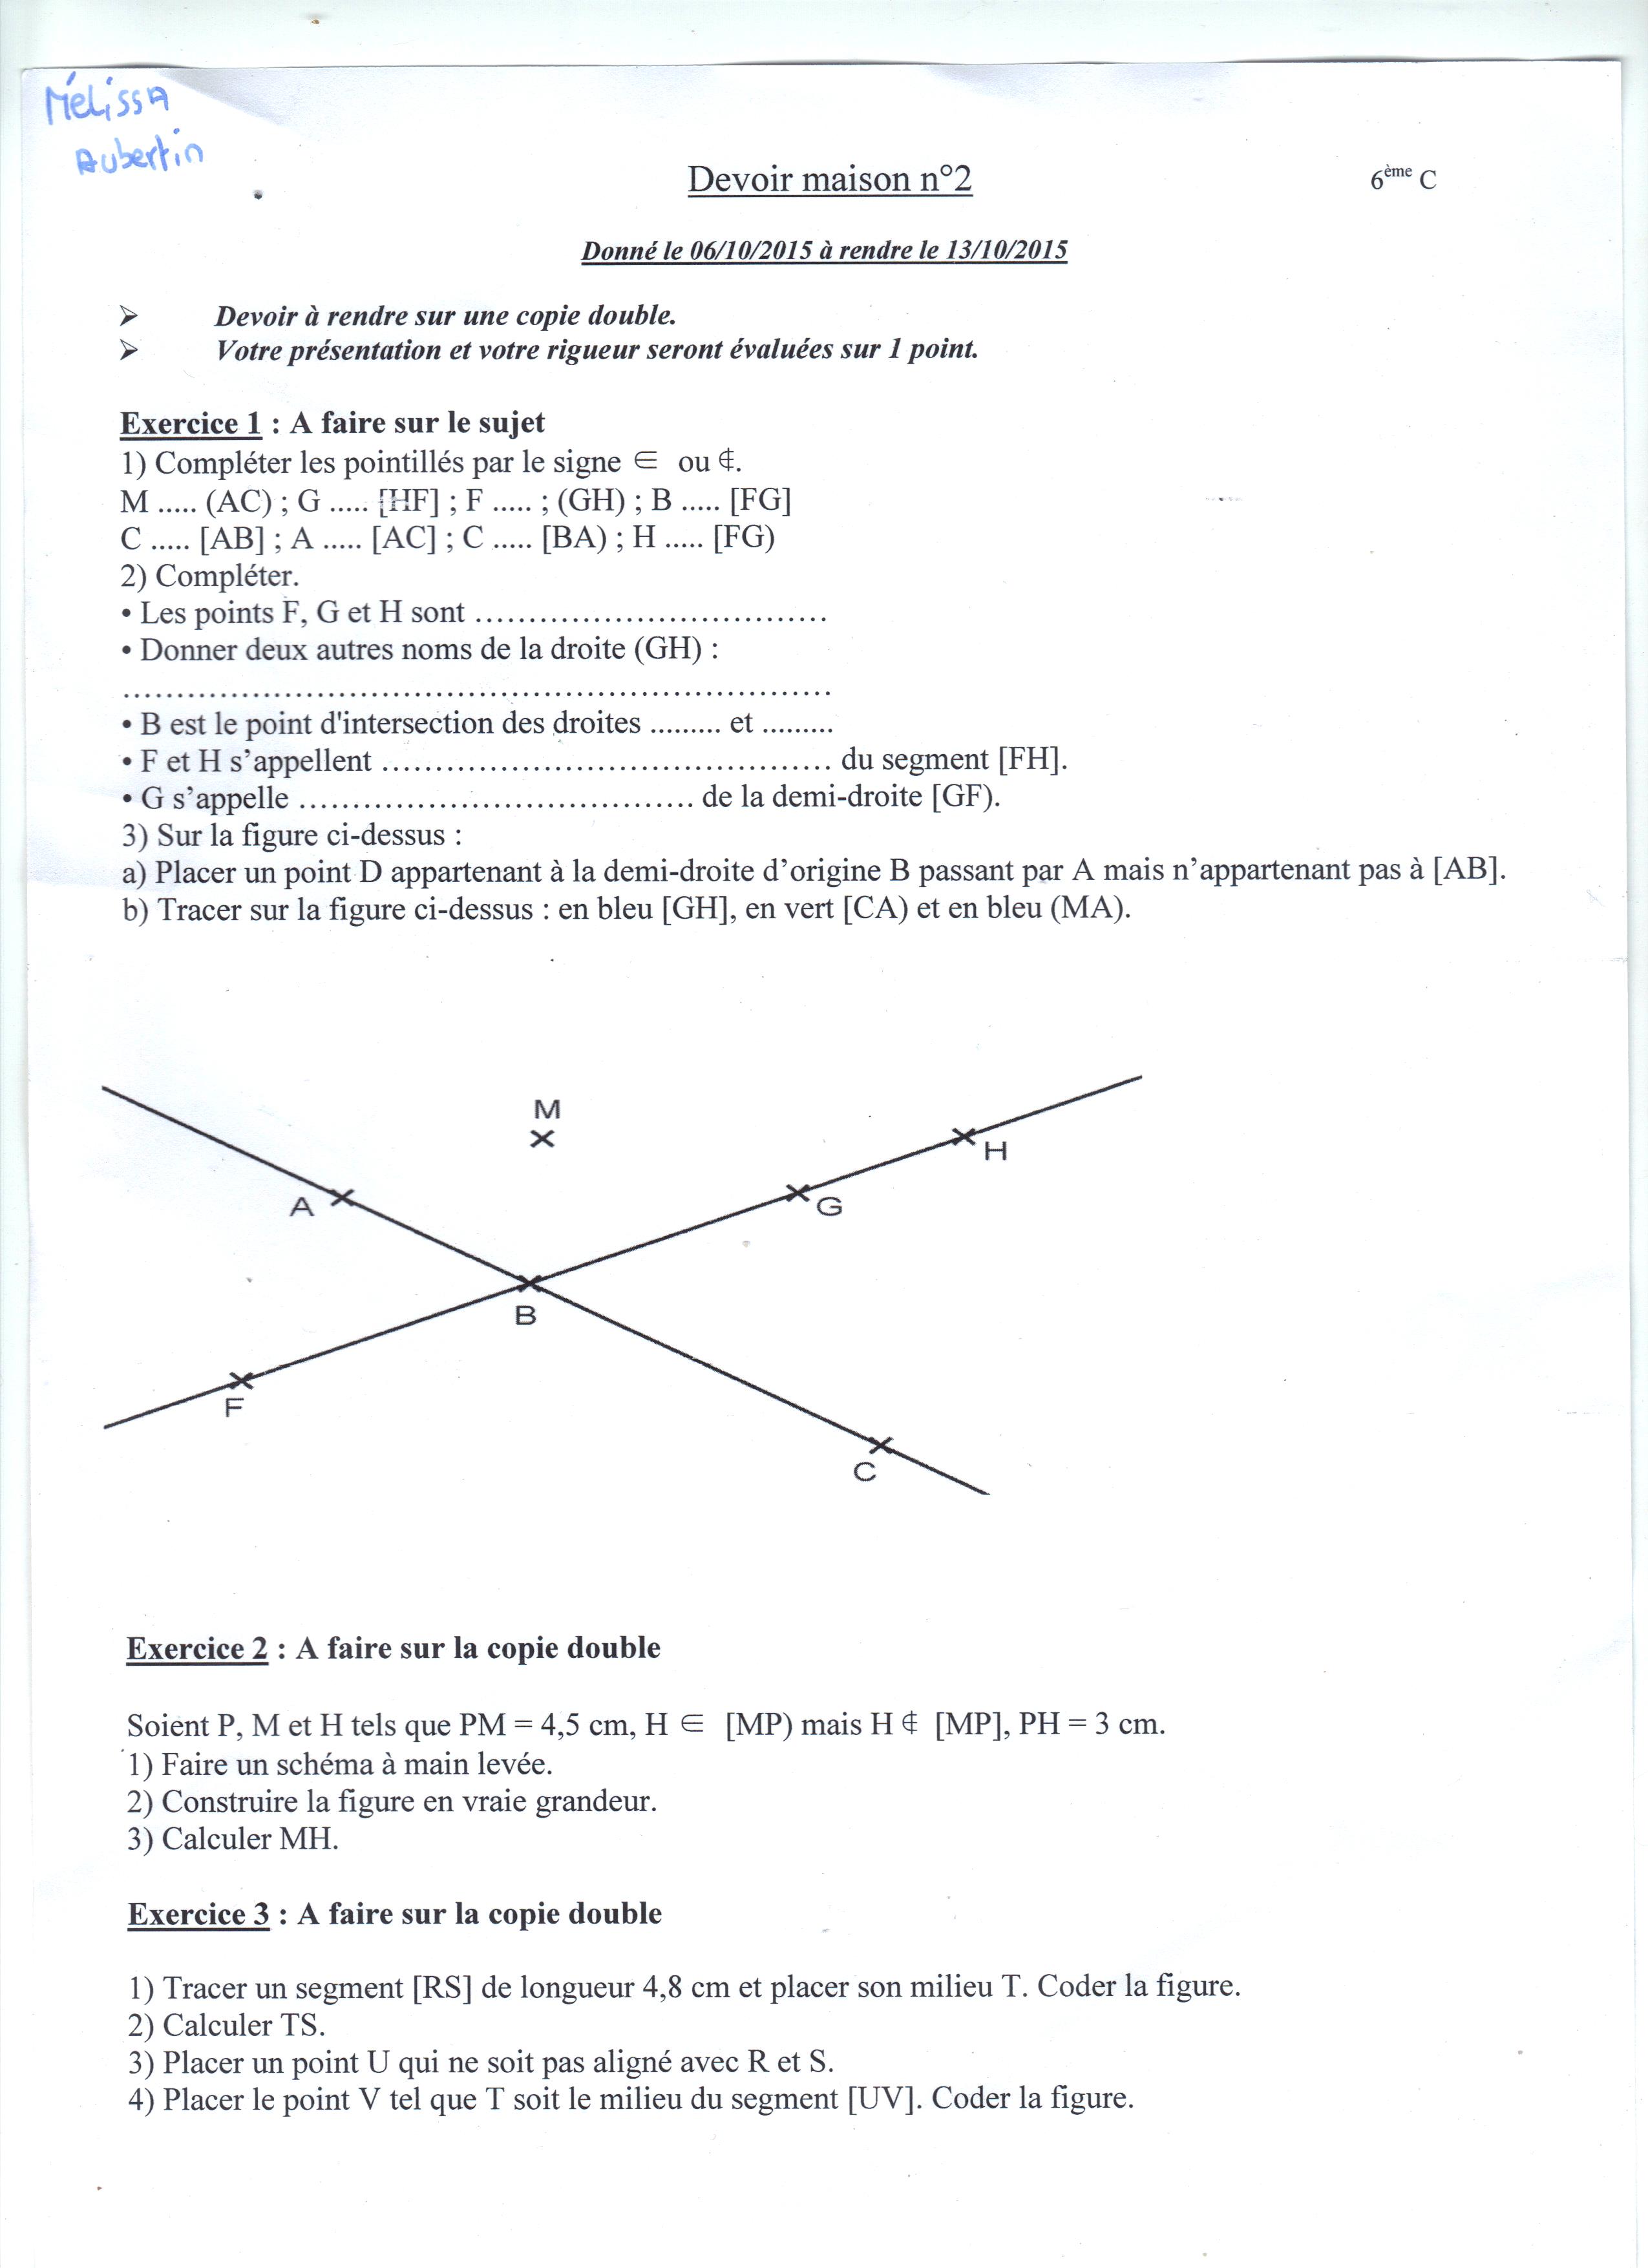 Devoir Maison Dm De Maths 6eme Dm mathematiques geometrie | digiSchool devoirs